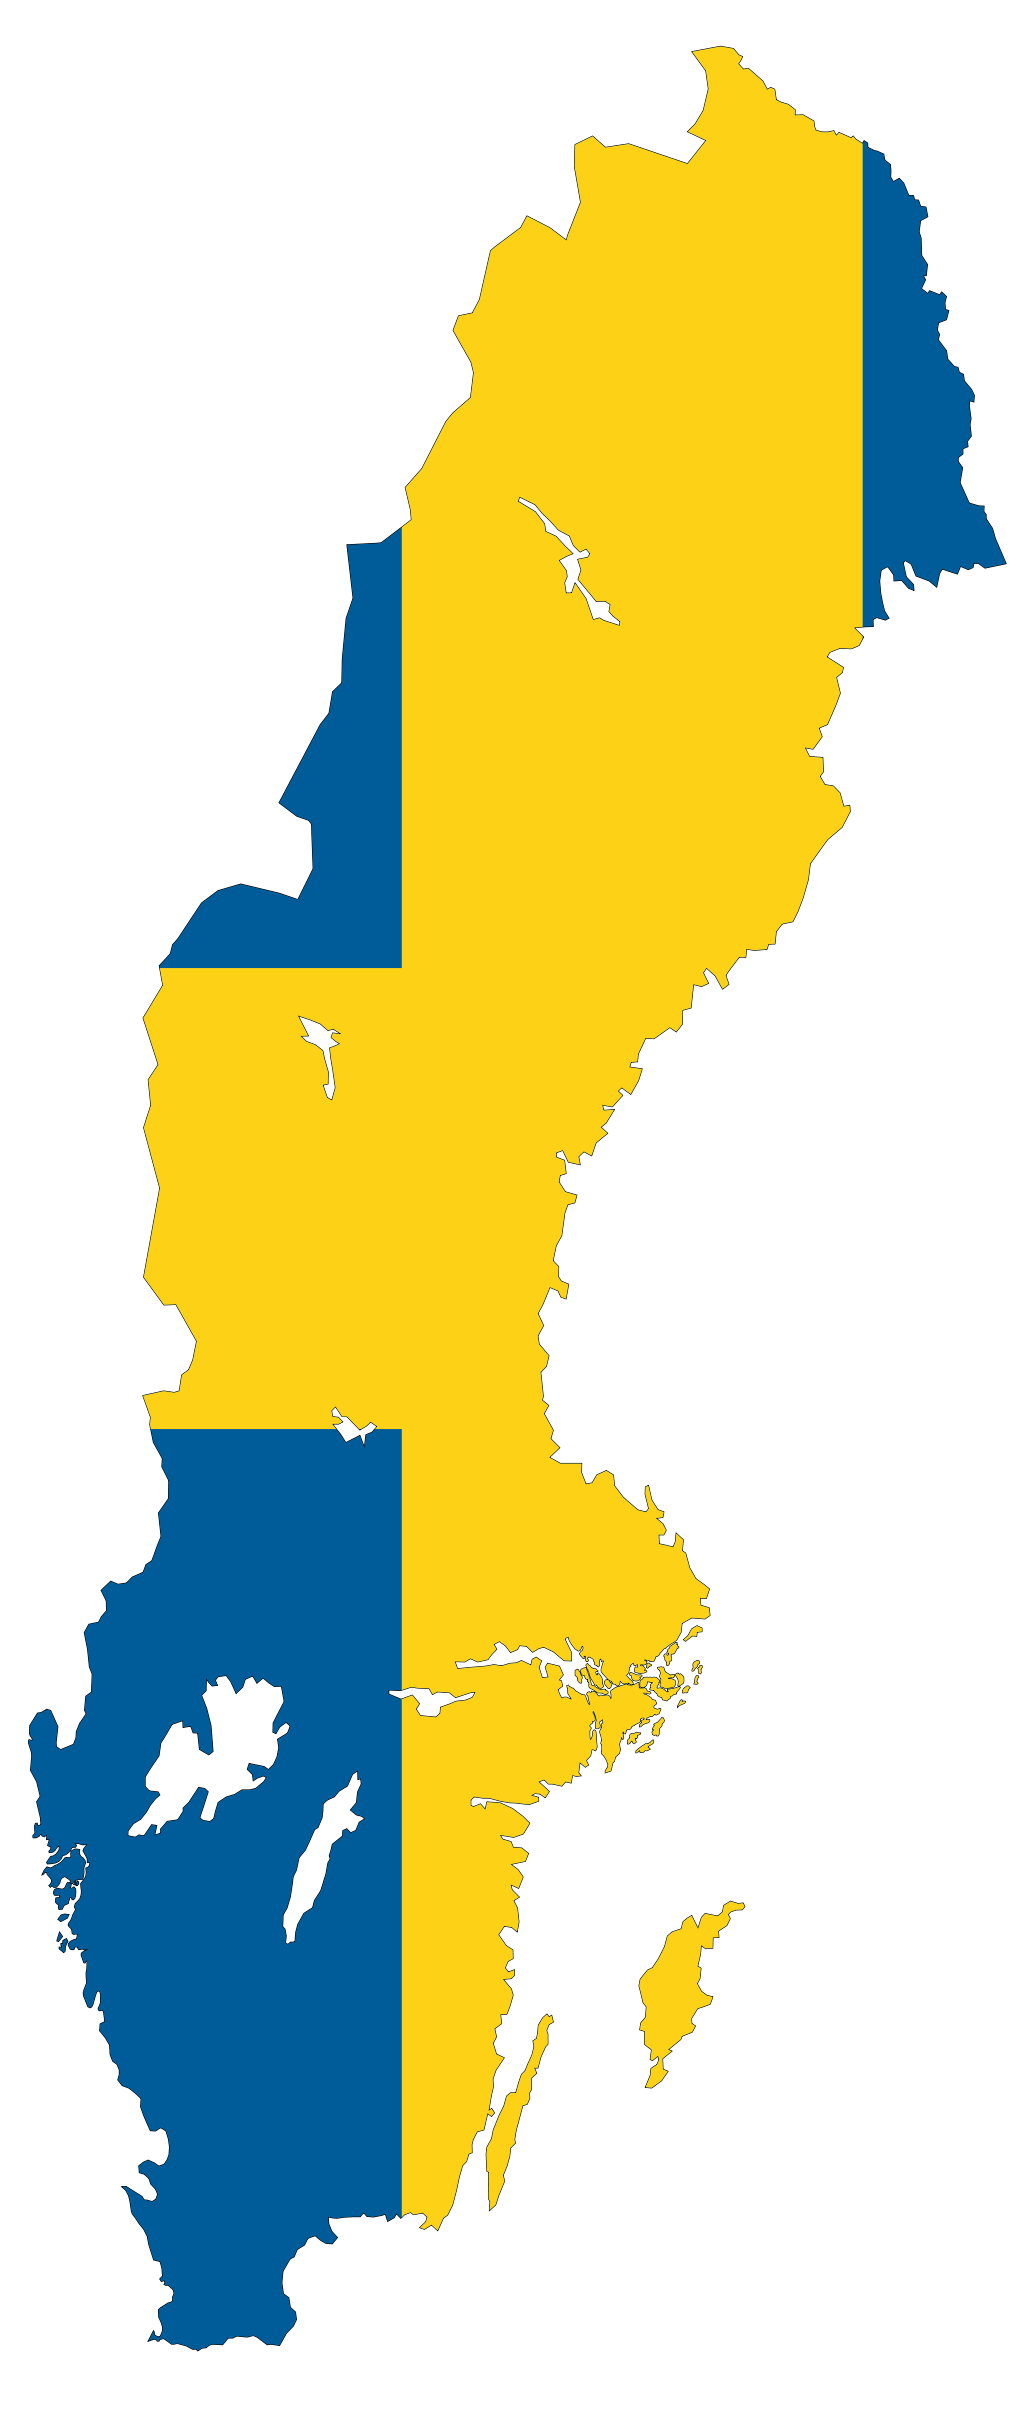 Sweden flag map. Flag Maps. Sweden flag, Flags